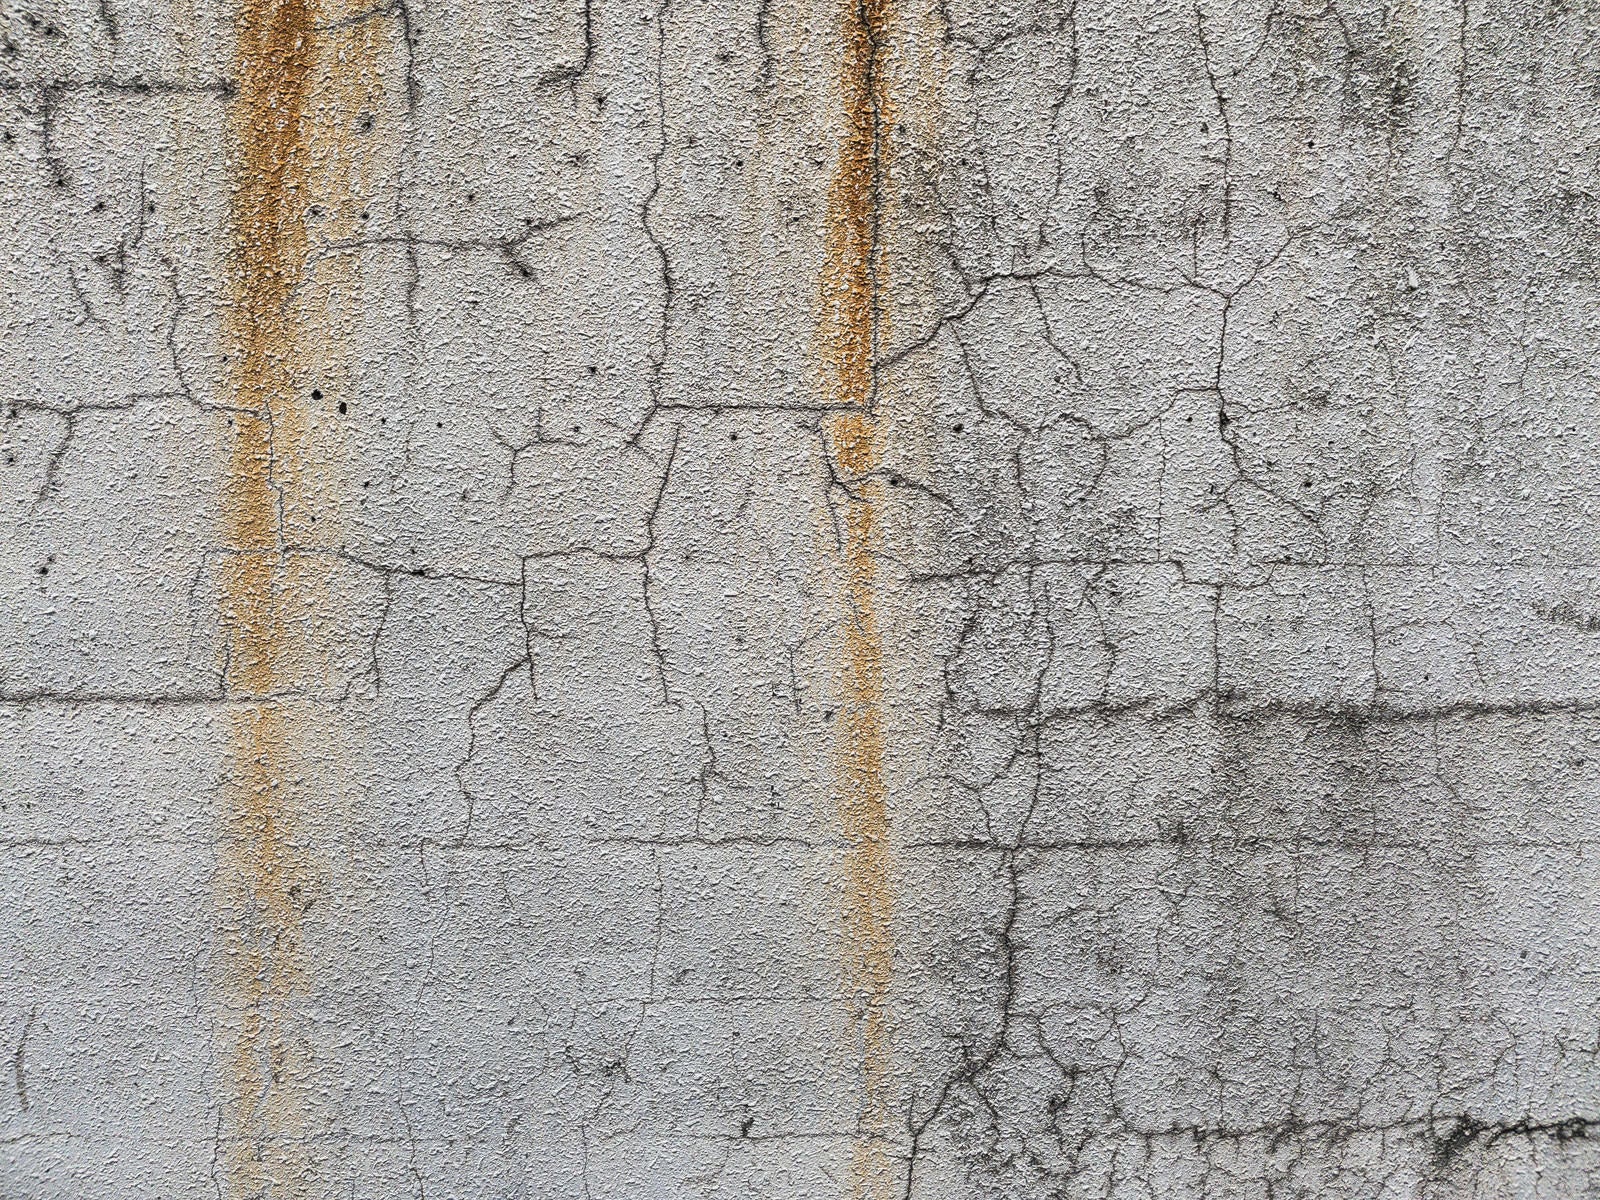 「流れ落ちる錆とひび割れた壁」の写真